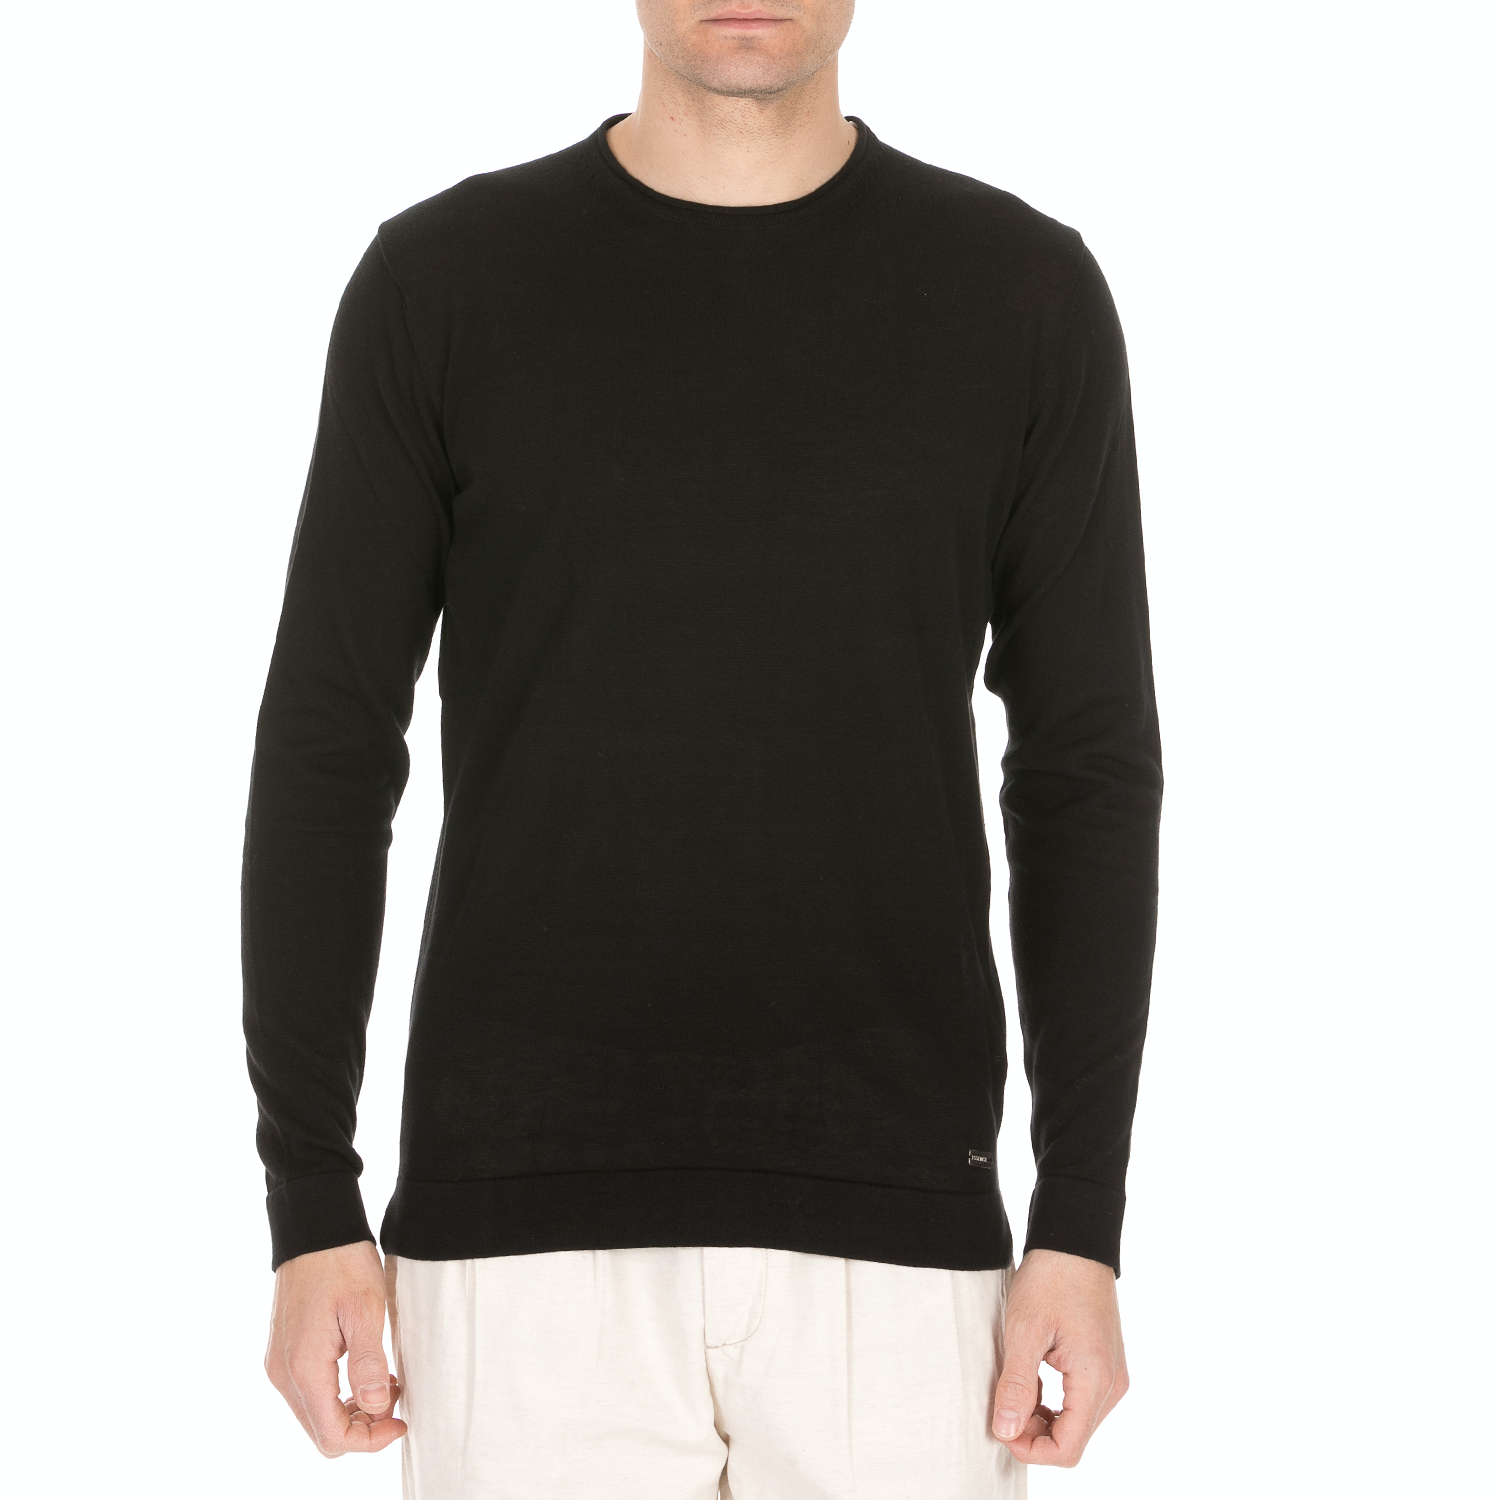 Ανδρικά/Ρούχα/Πλεκτά-Ζακέτες/Πουλόβερ SSEINSE - Ανδρική πλεκτή μπλούζα SSEINSE GIROCOLLO μαύρη